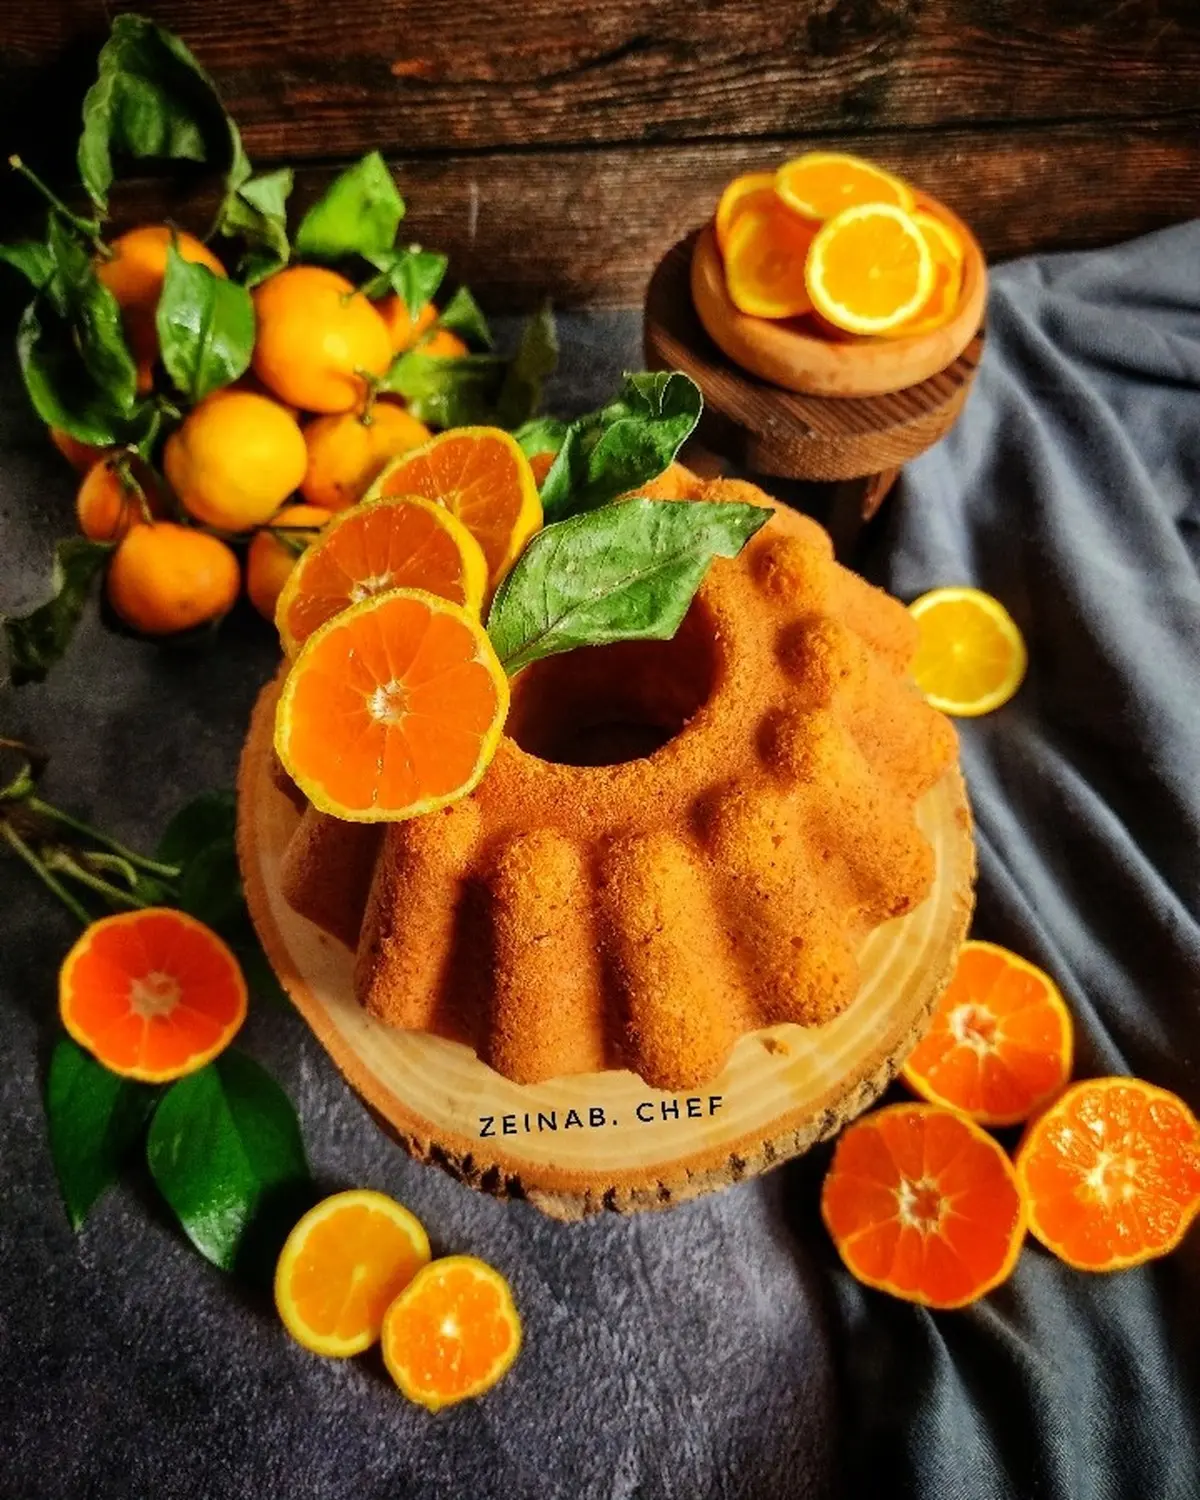 نارنگی با کره سرخش کن و کیک عالی بپز | با این کیک تو مهمونیا غوغا کن